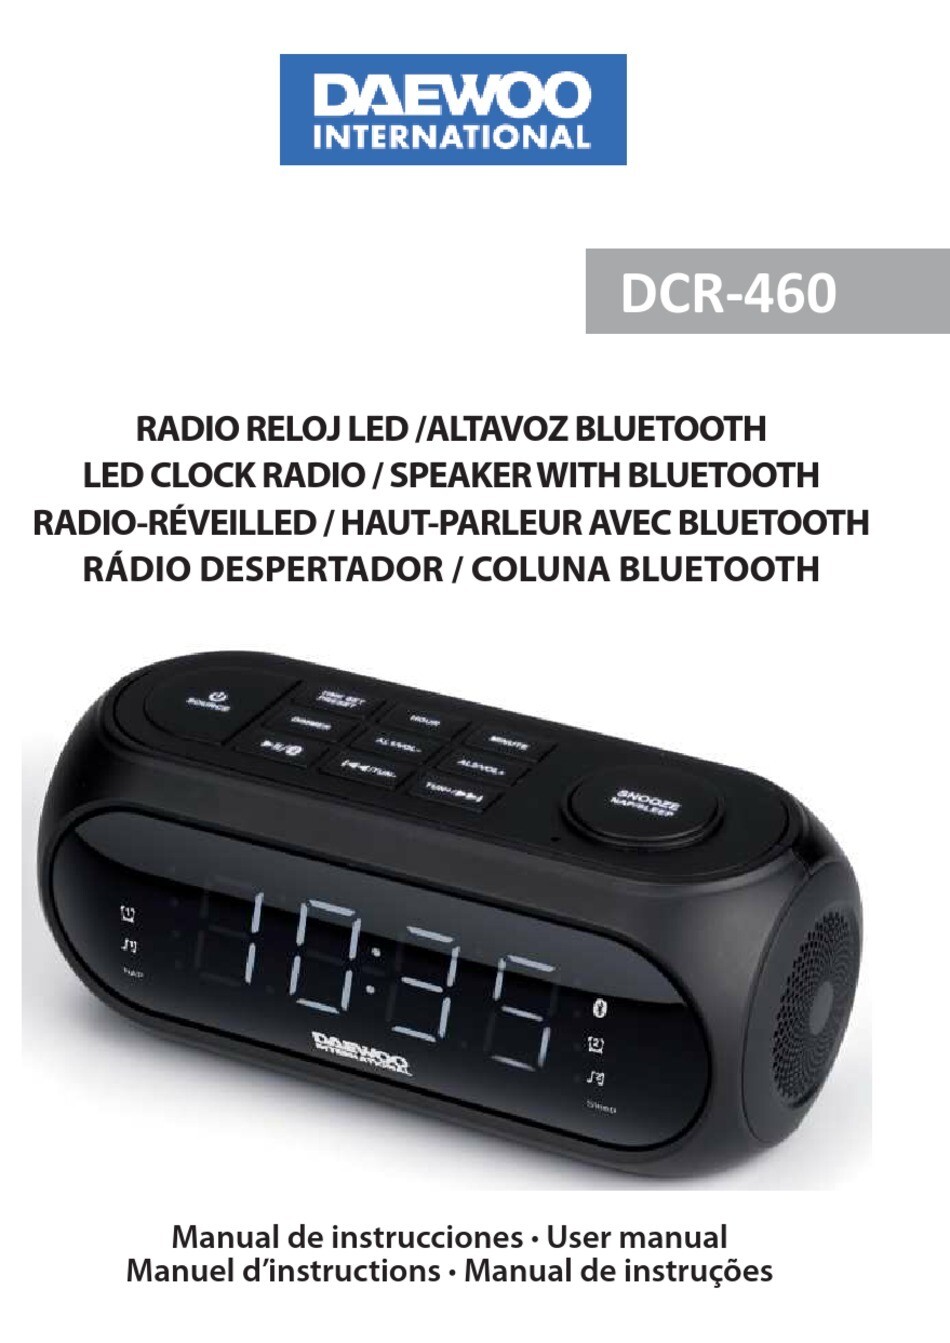 RADIO RELOJ DAEWOO DCR-460 BLUETOOTH + USB FM Pantalla LED Alarma Dual